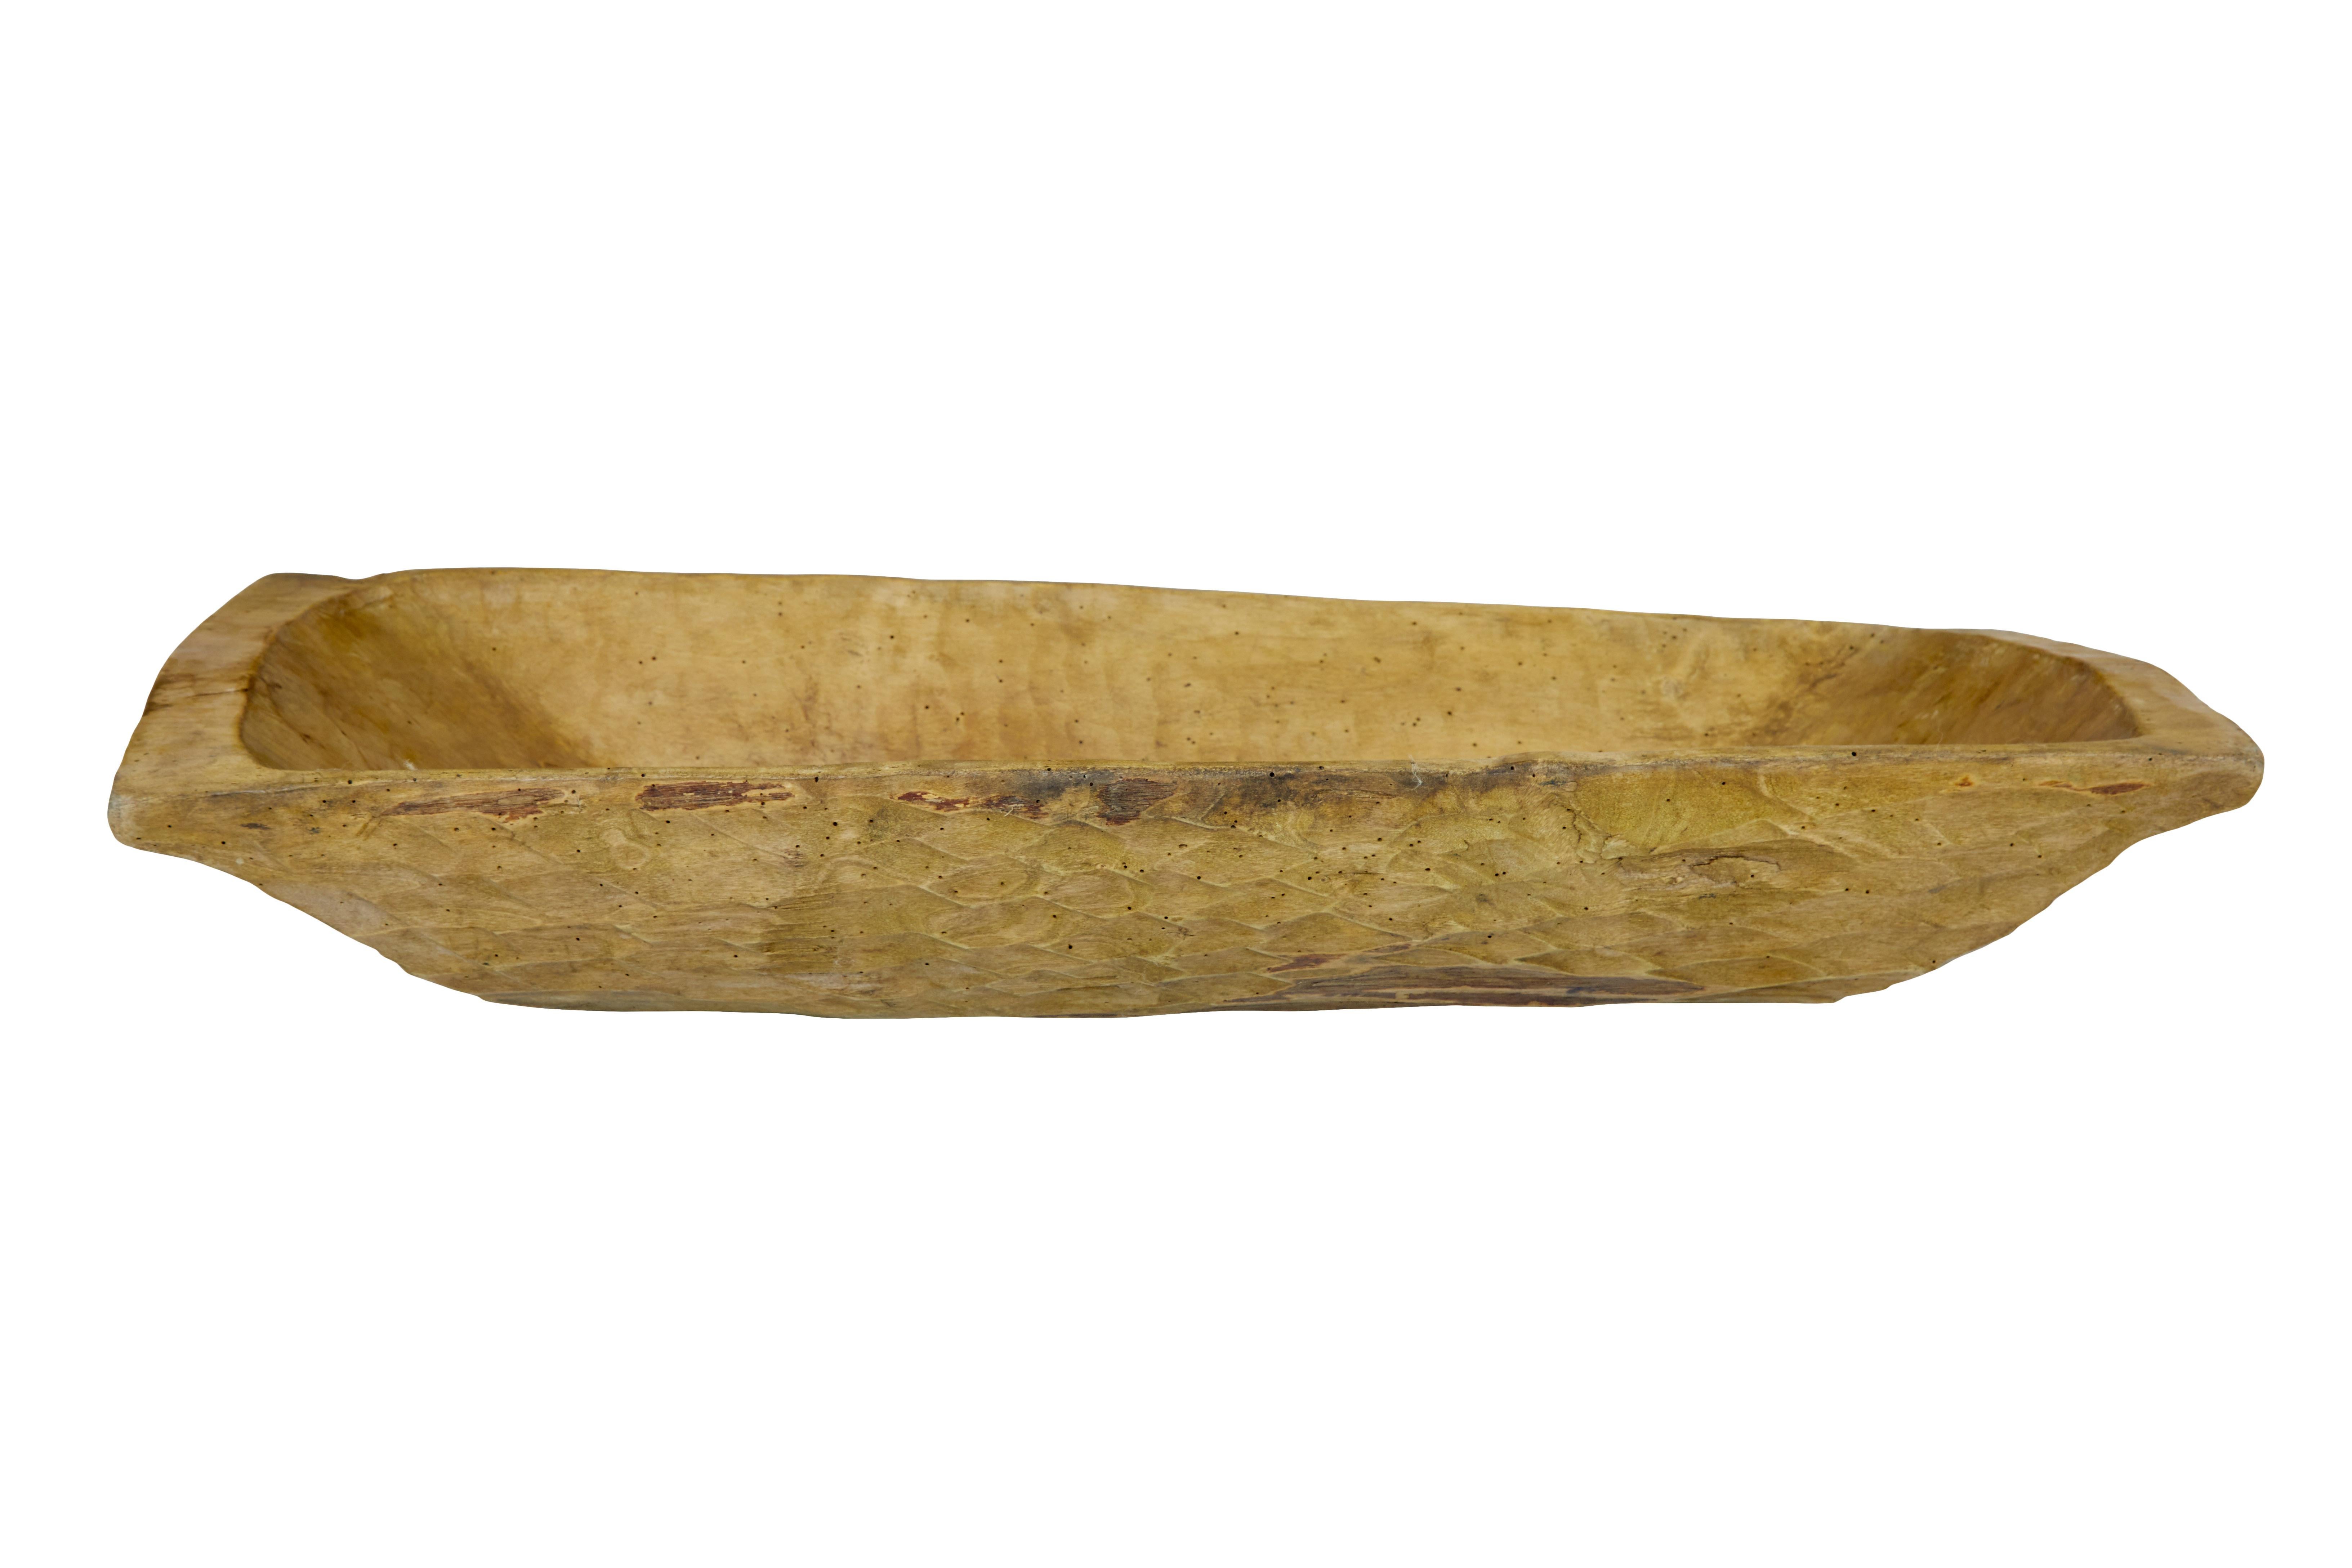 Rustikaler, ausgegrabener Holzserver um 1900.

Hier haben wir einen osteuropäischen Viehtransporter aus dem frühen 20.  Diese wurden durch Aushöhlen eines Baumstamms von Hand hergestellt.

Es gibt keine Hinweise darauf, dass dieses Stück jemals für